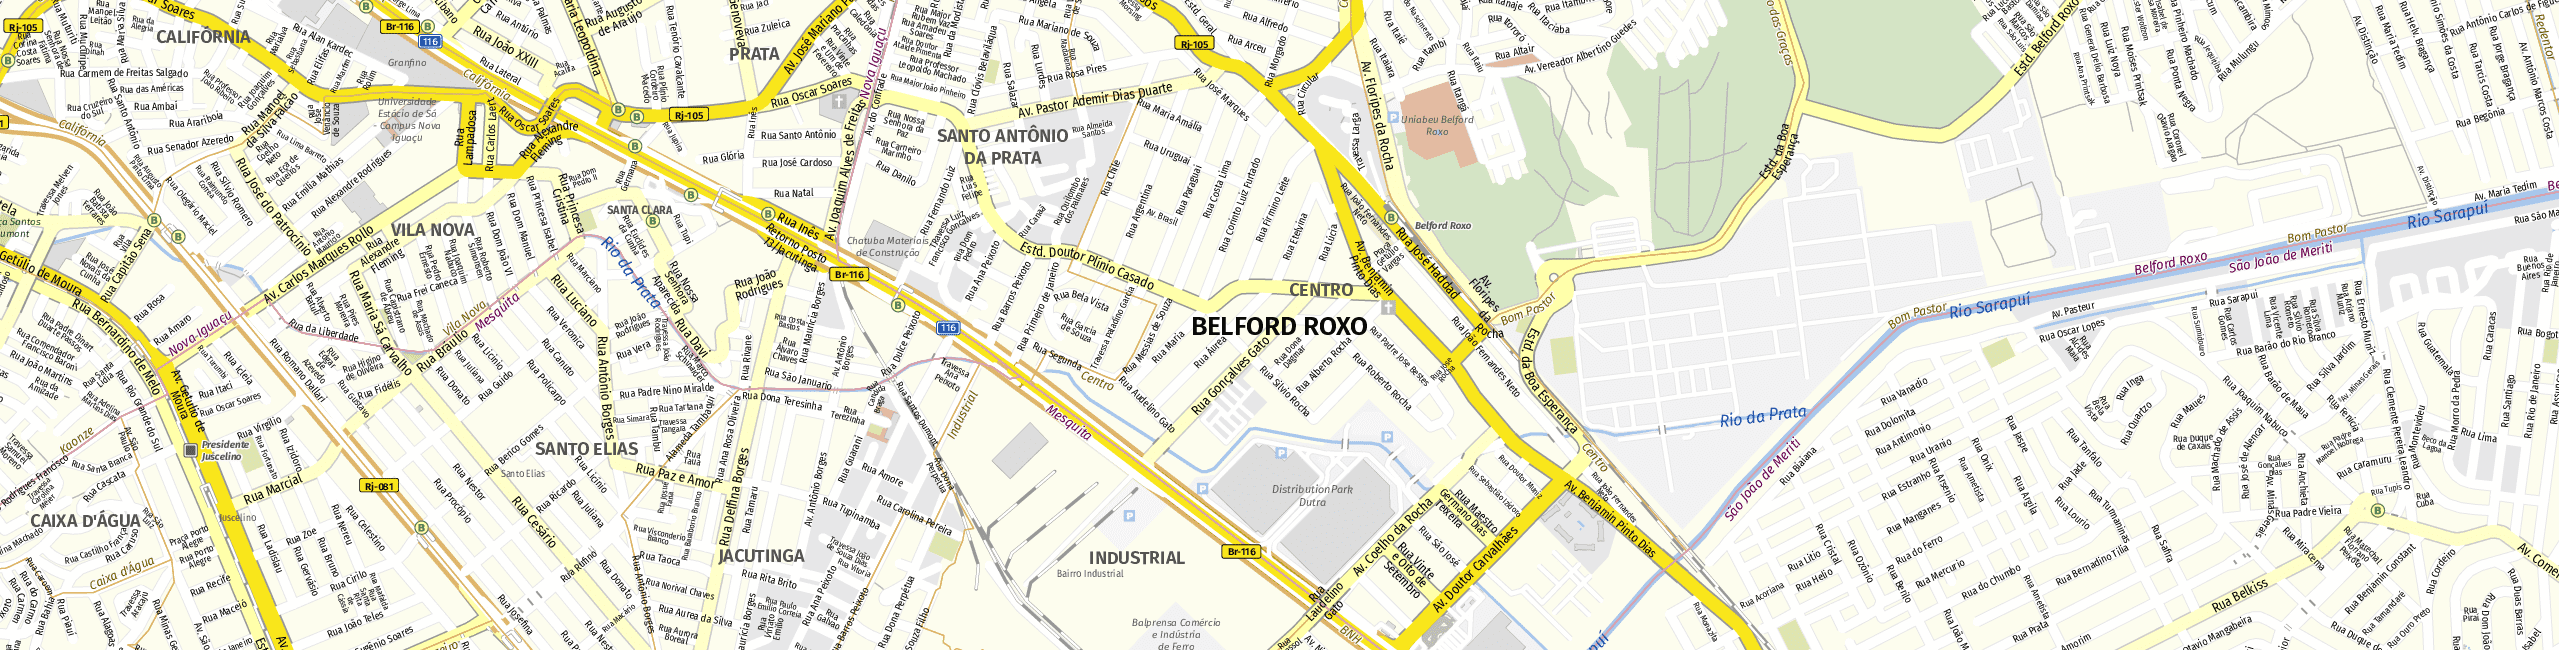 Stadtplan Belford Roxo zum Downloaden.